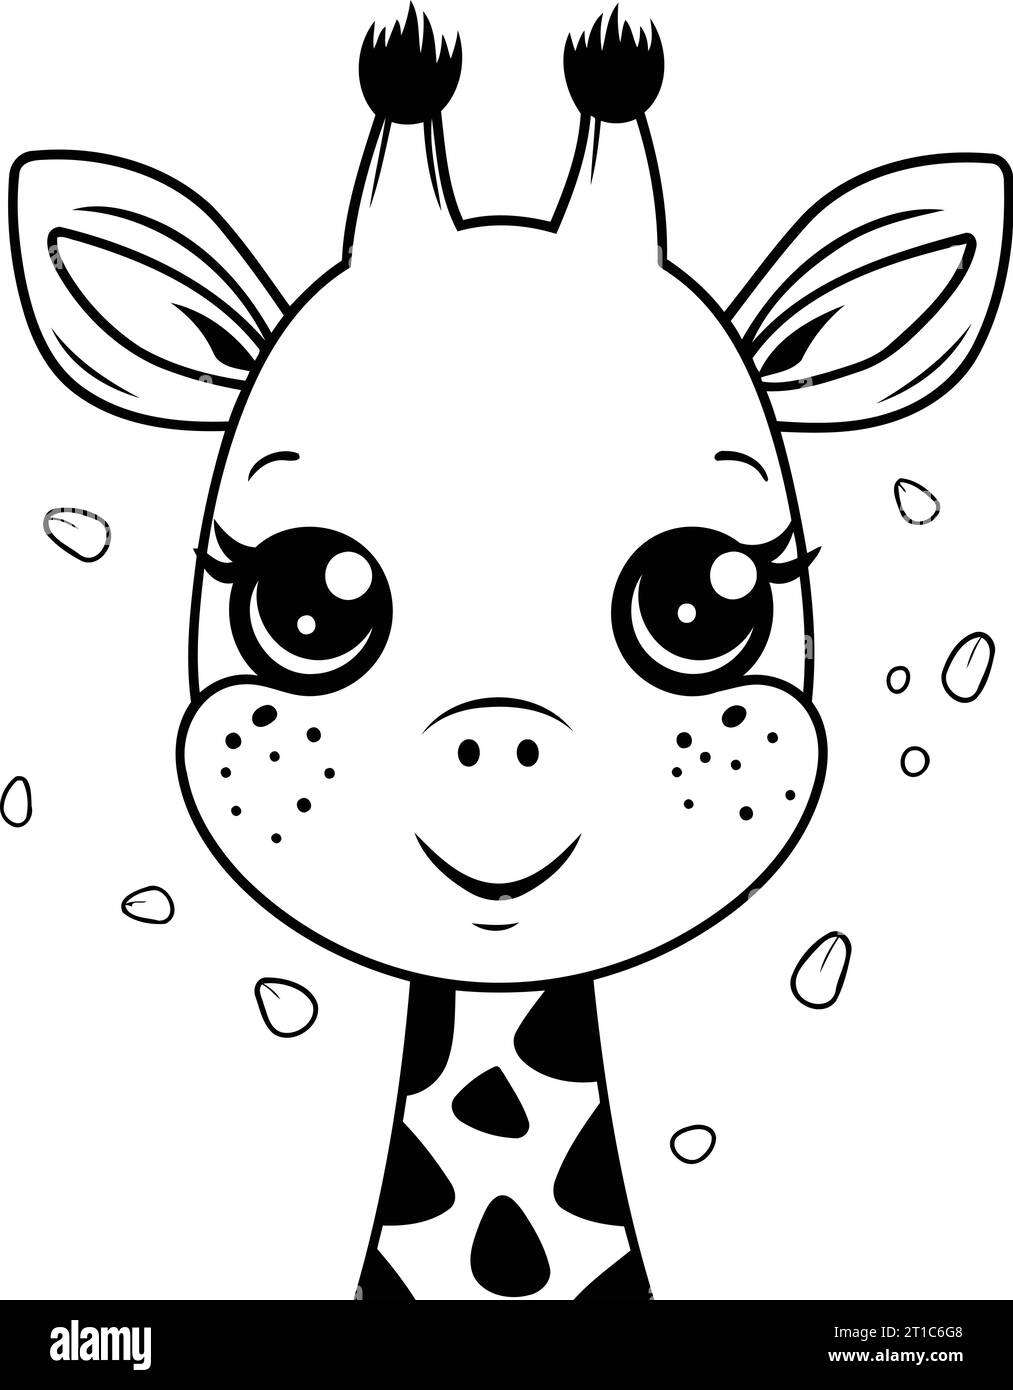 cute giraffe baby animal cartoon vector illustration graphic design vector illustration graphic design Stock Vector